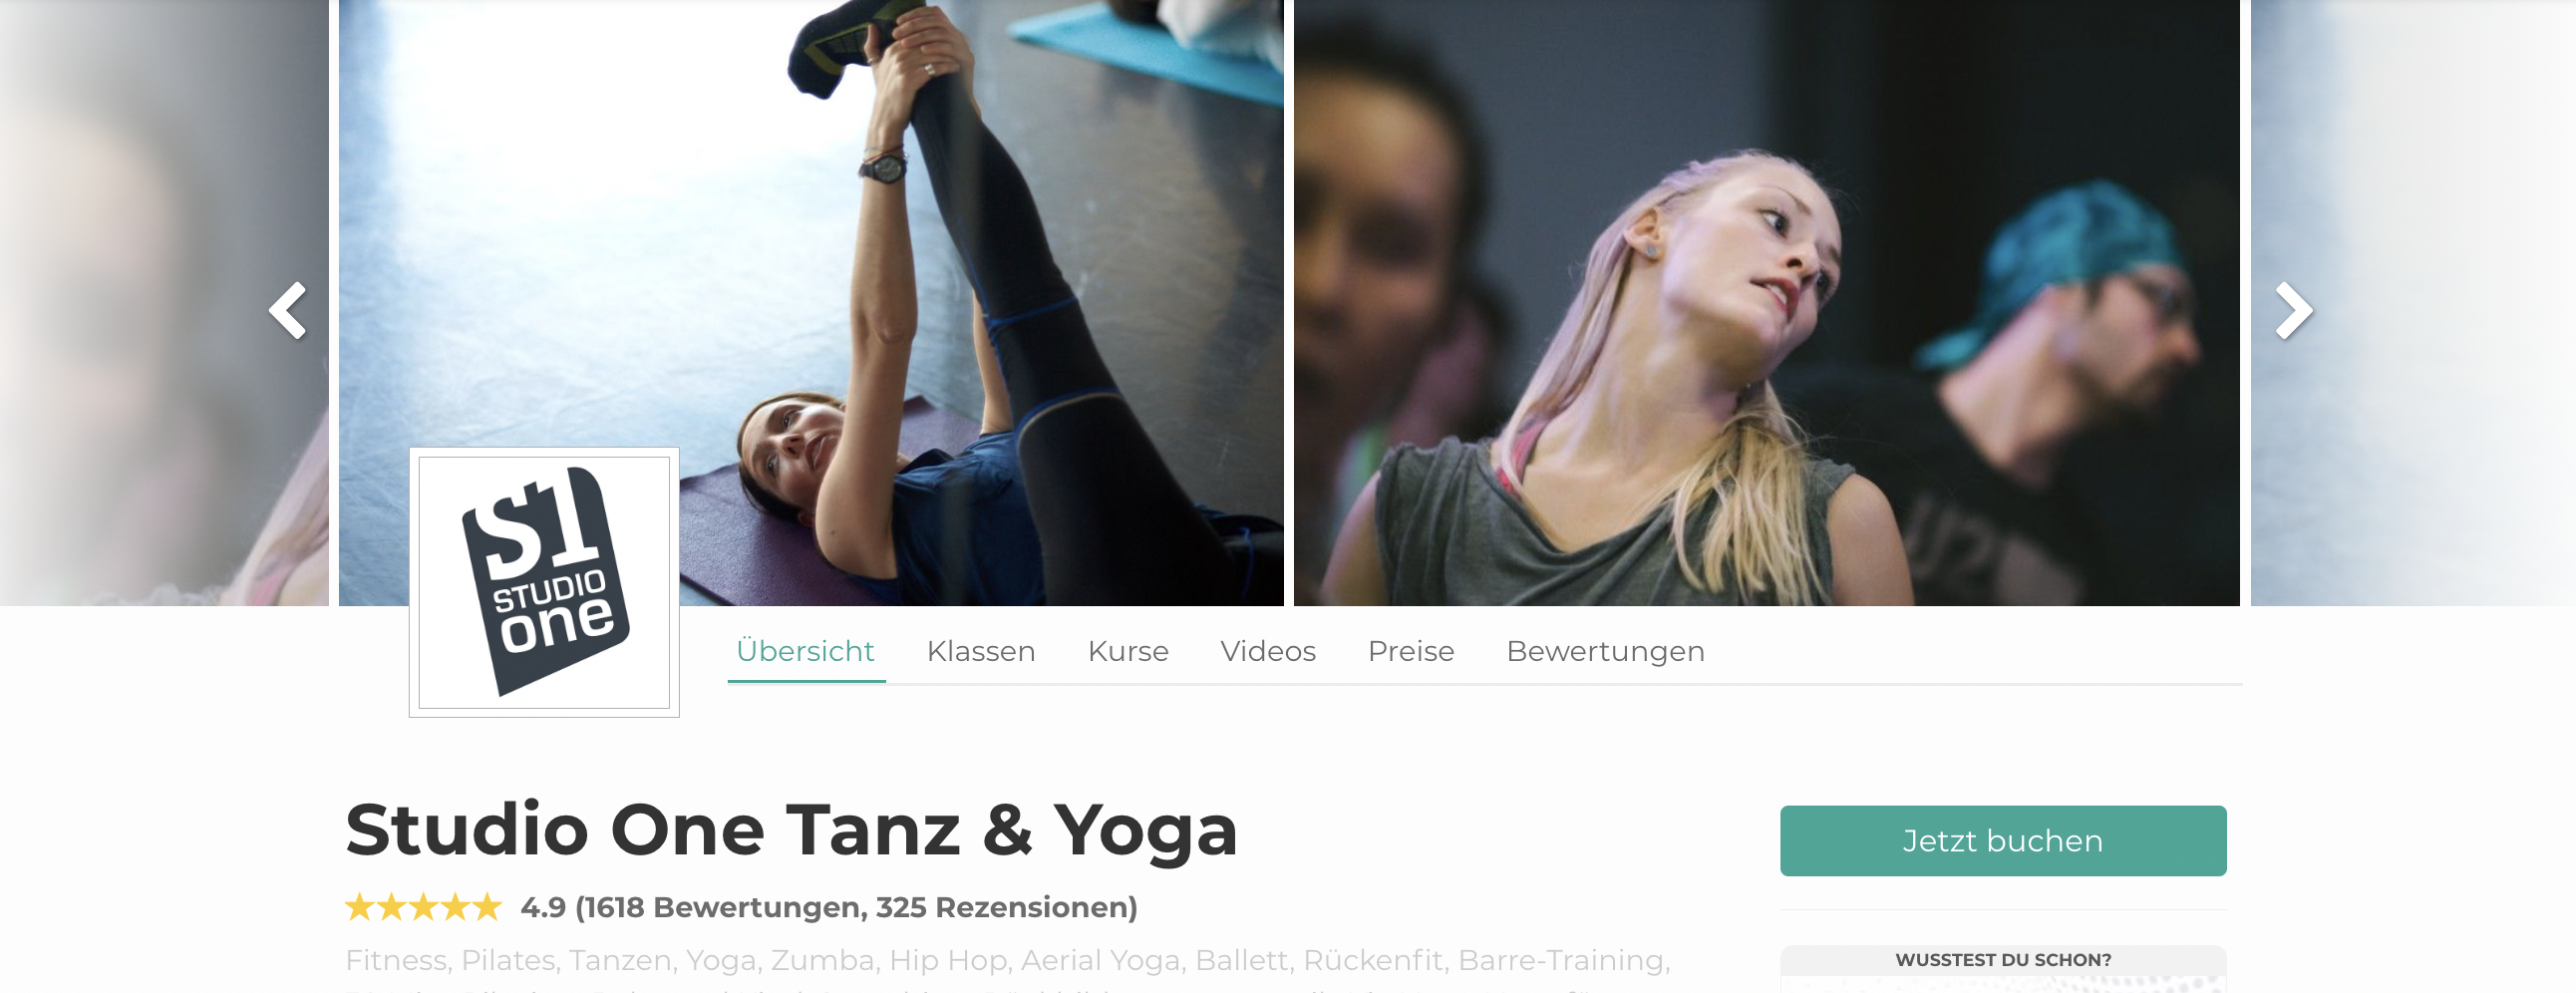 Studio One ist top Yoga Studio in München